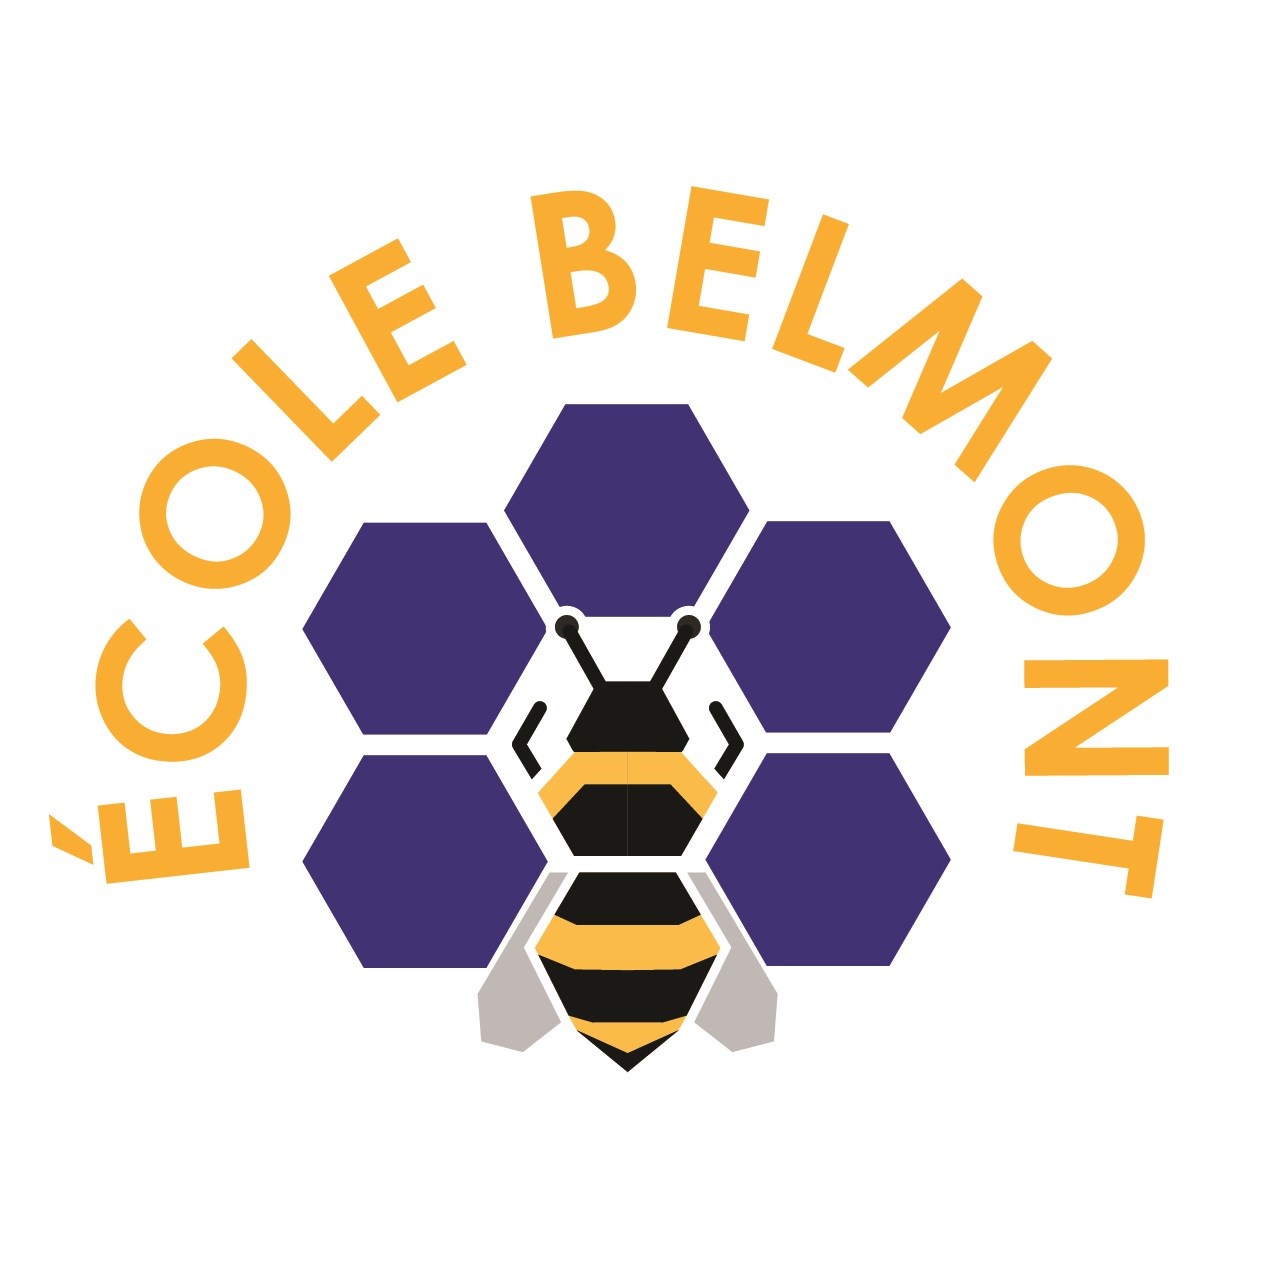 Ensemble, nous sommes les abeilles de Belmont! Proud to BEE!